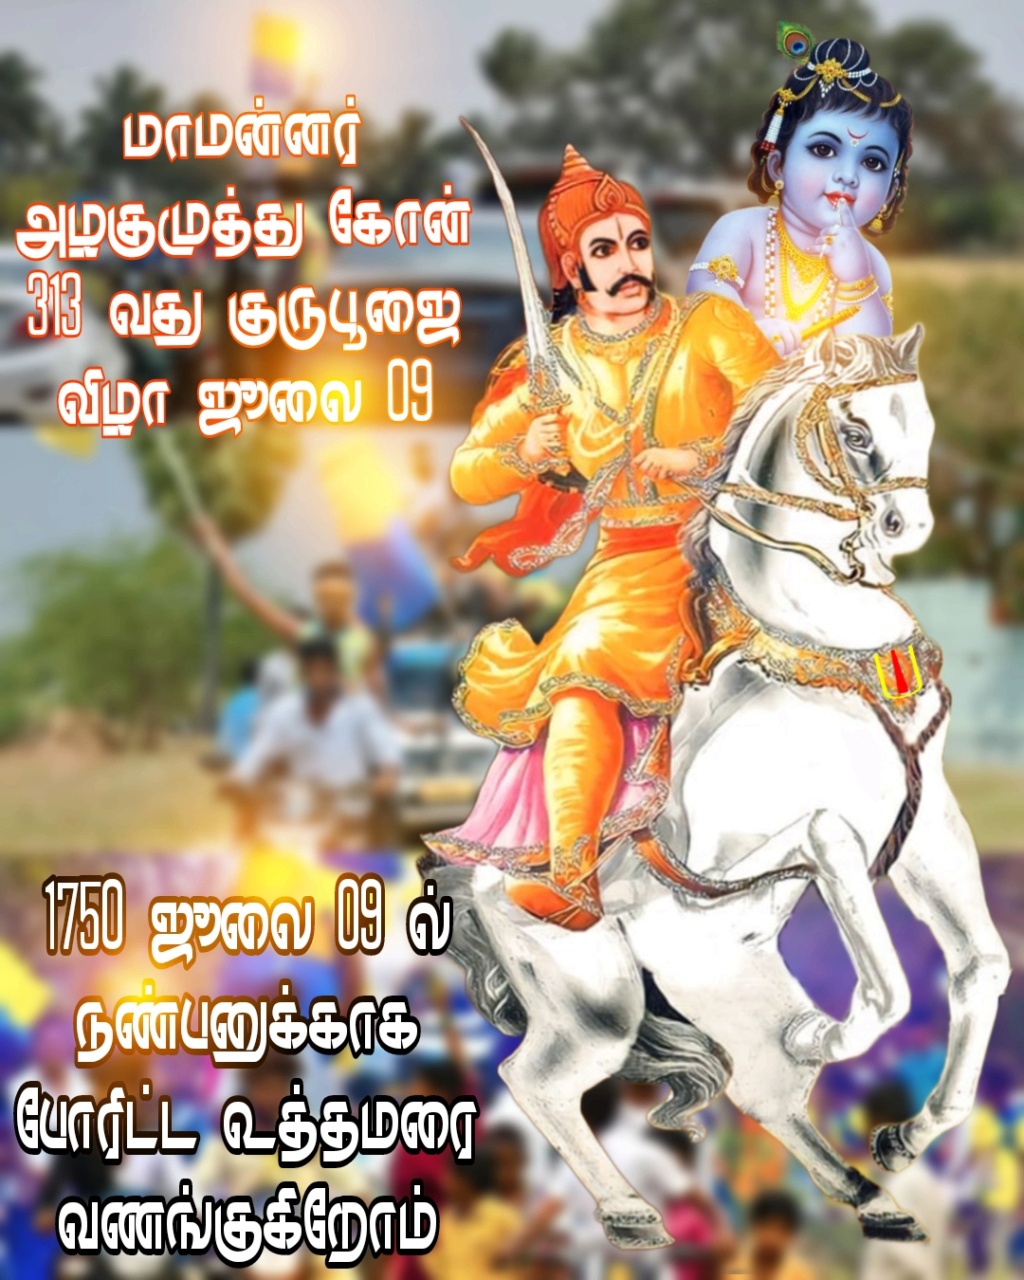 தமிழகவரலாறு - மாமன்னர் அழகுமுத்து சேர்வை கோன்  Picsar12